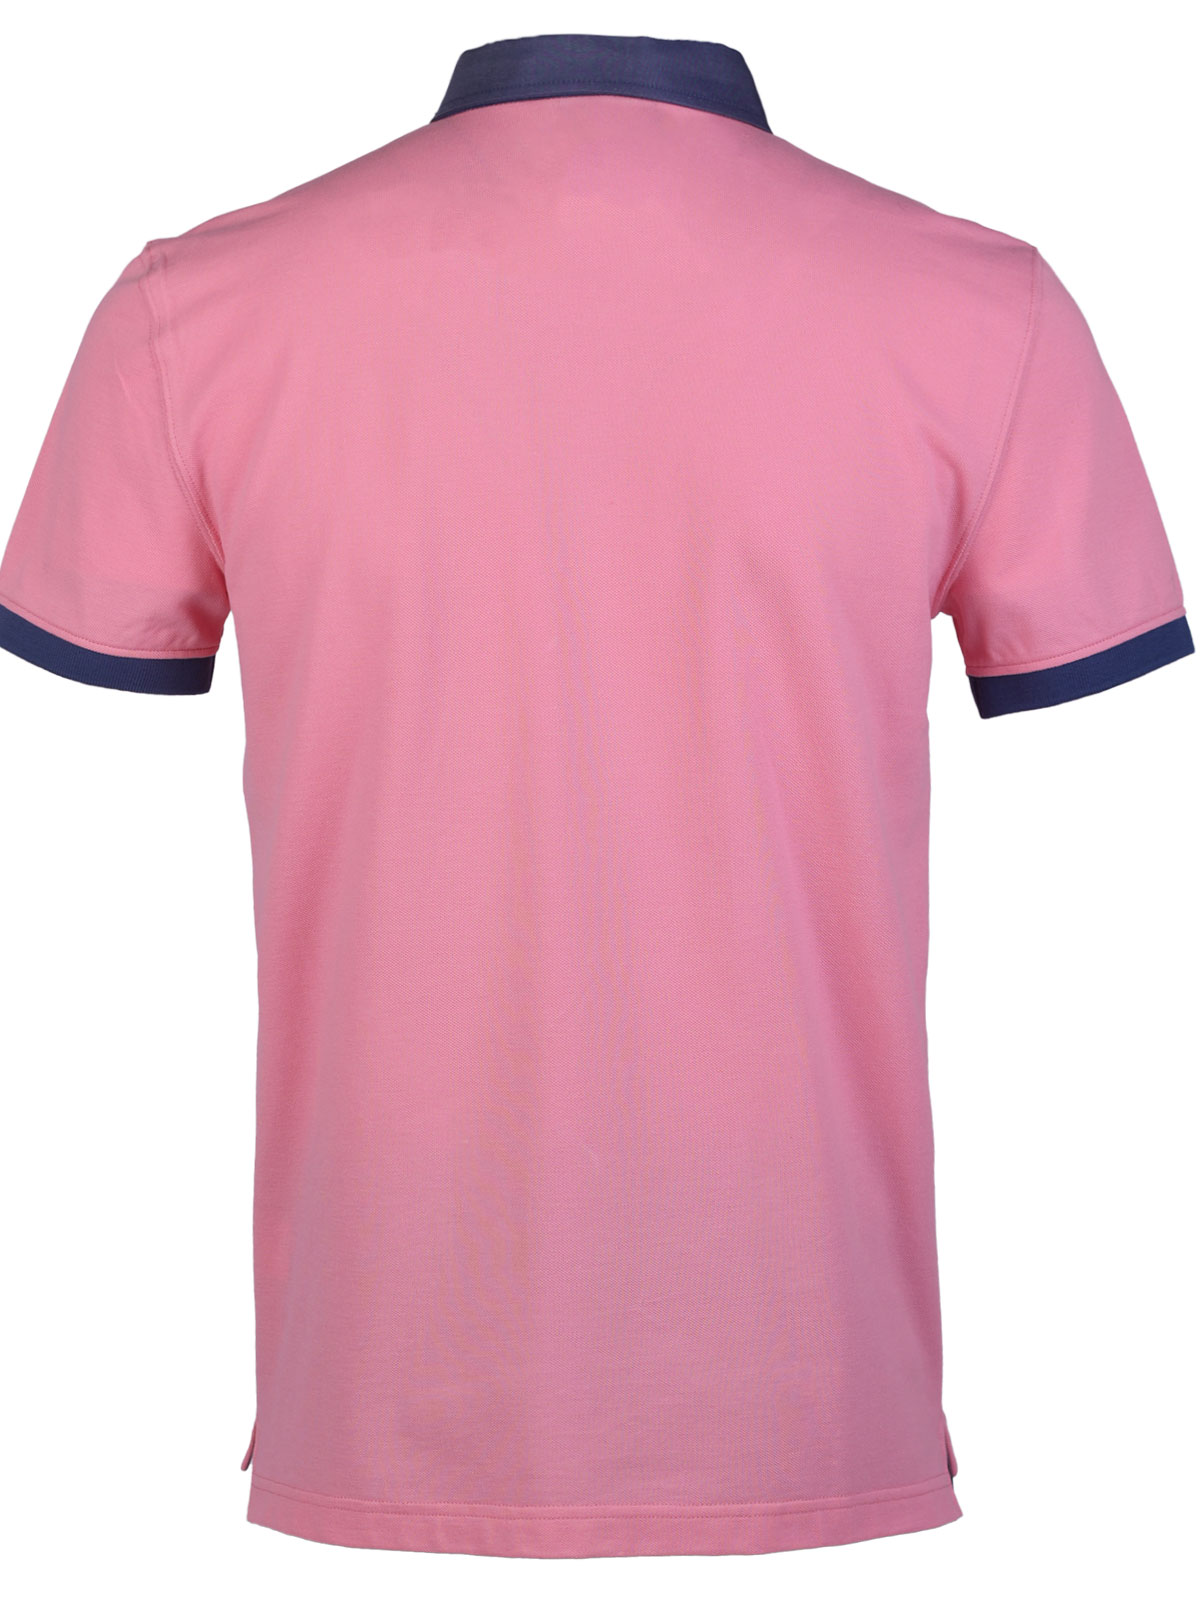 Bluza roz cu guler albastru denim - 93430 € 42.74 img2